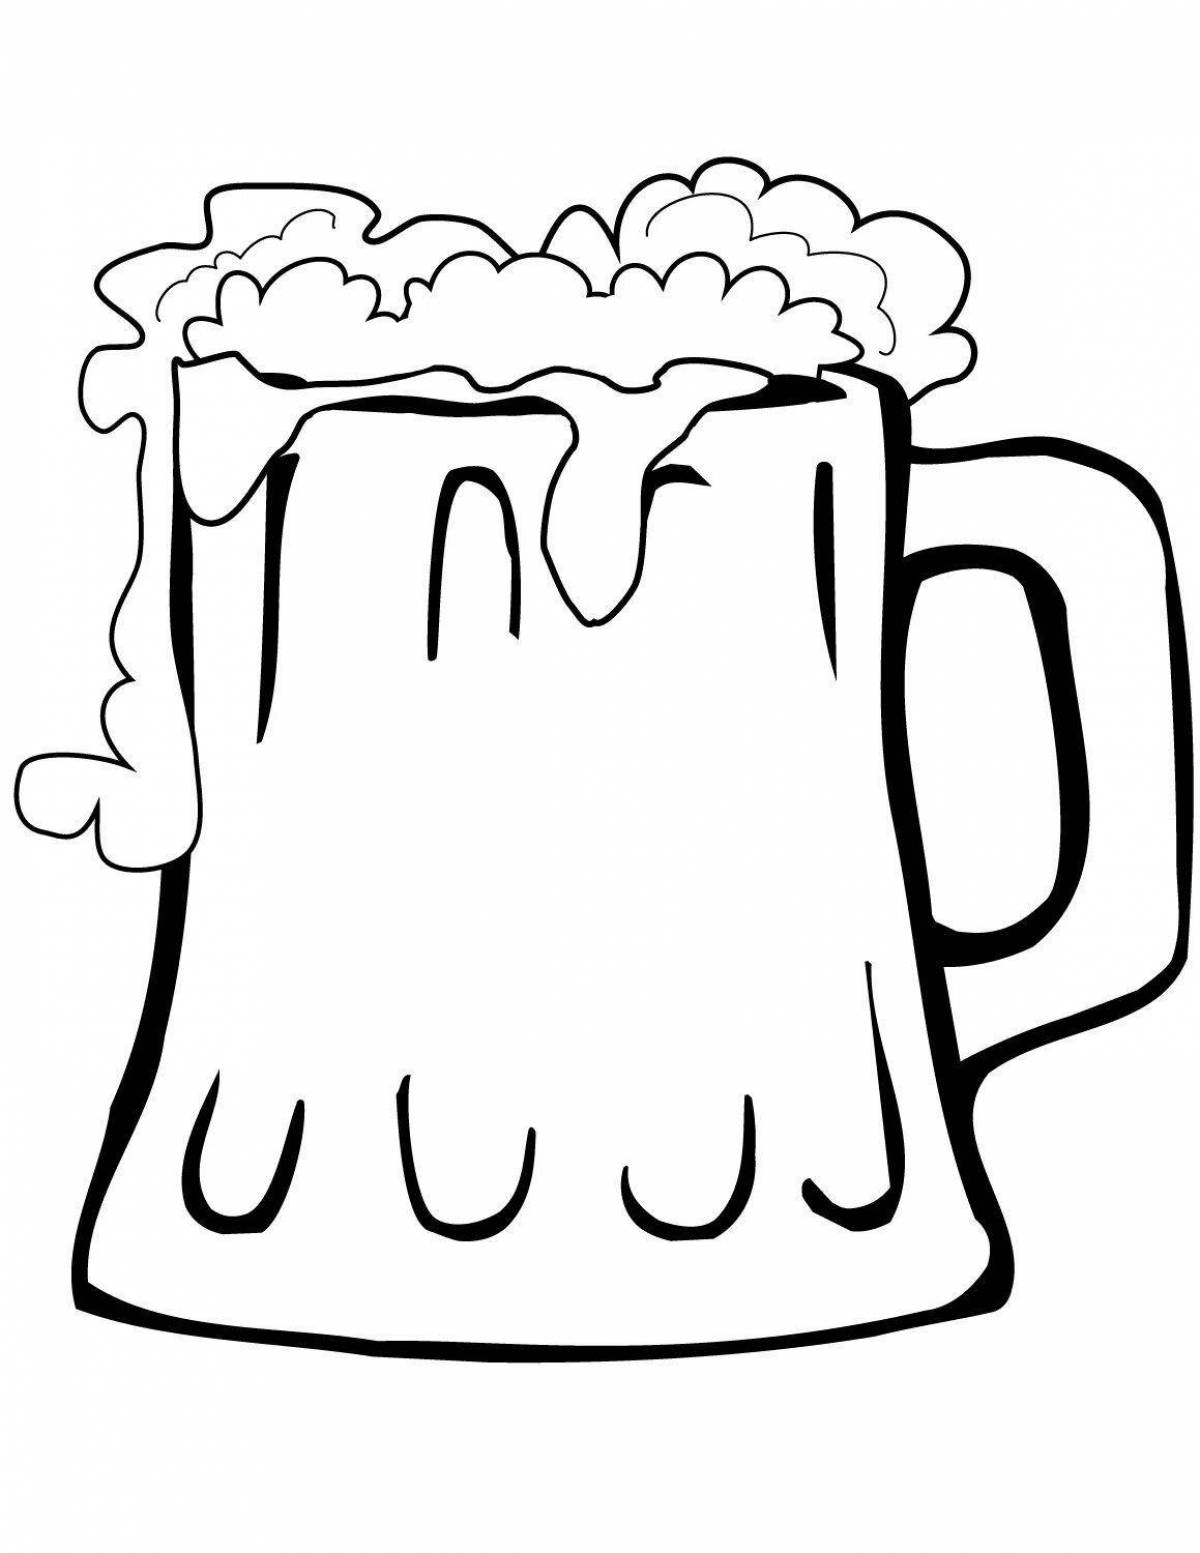 Hoppy beer mug coloring page